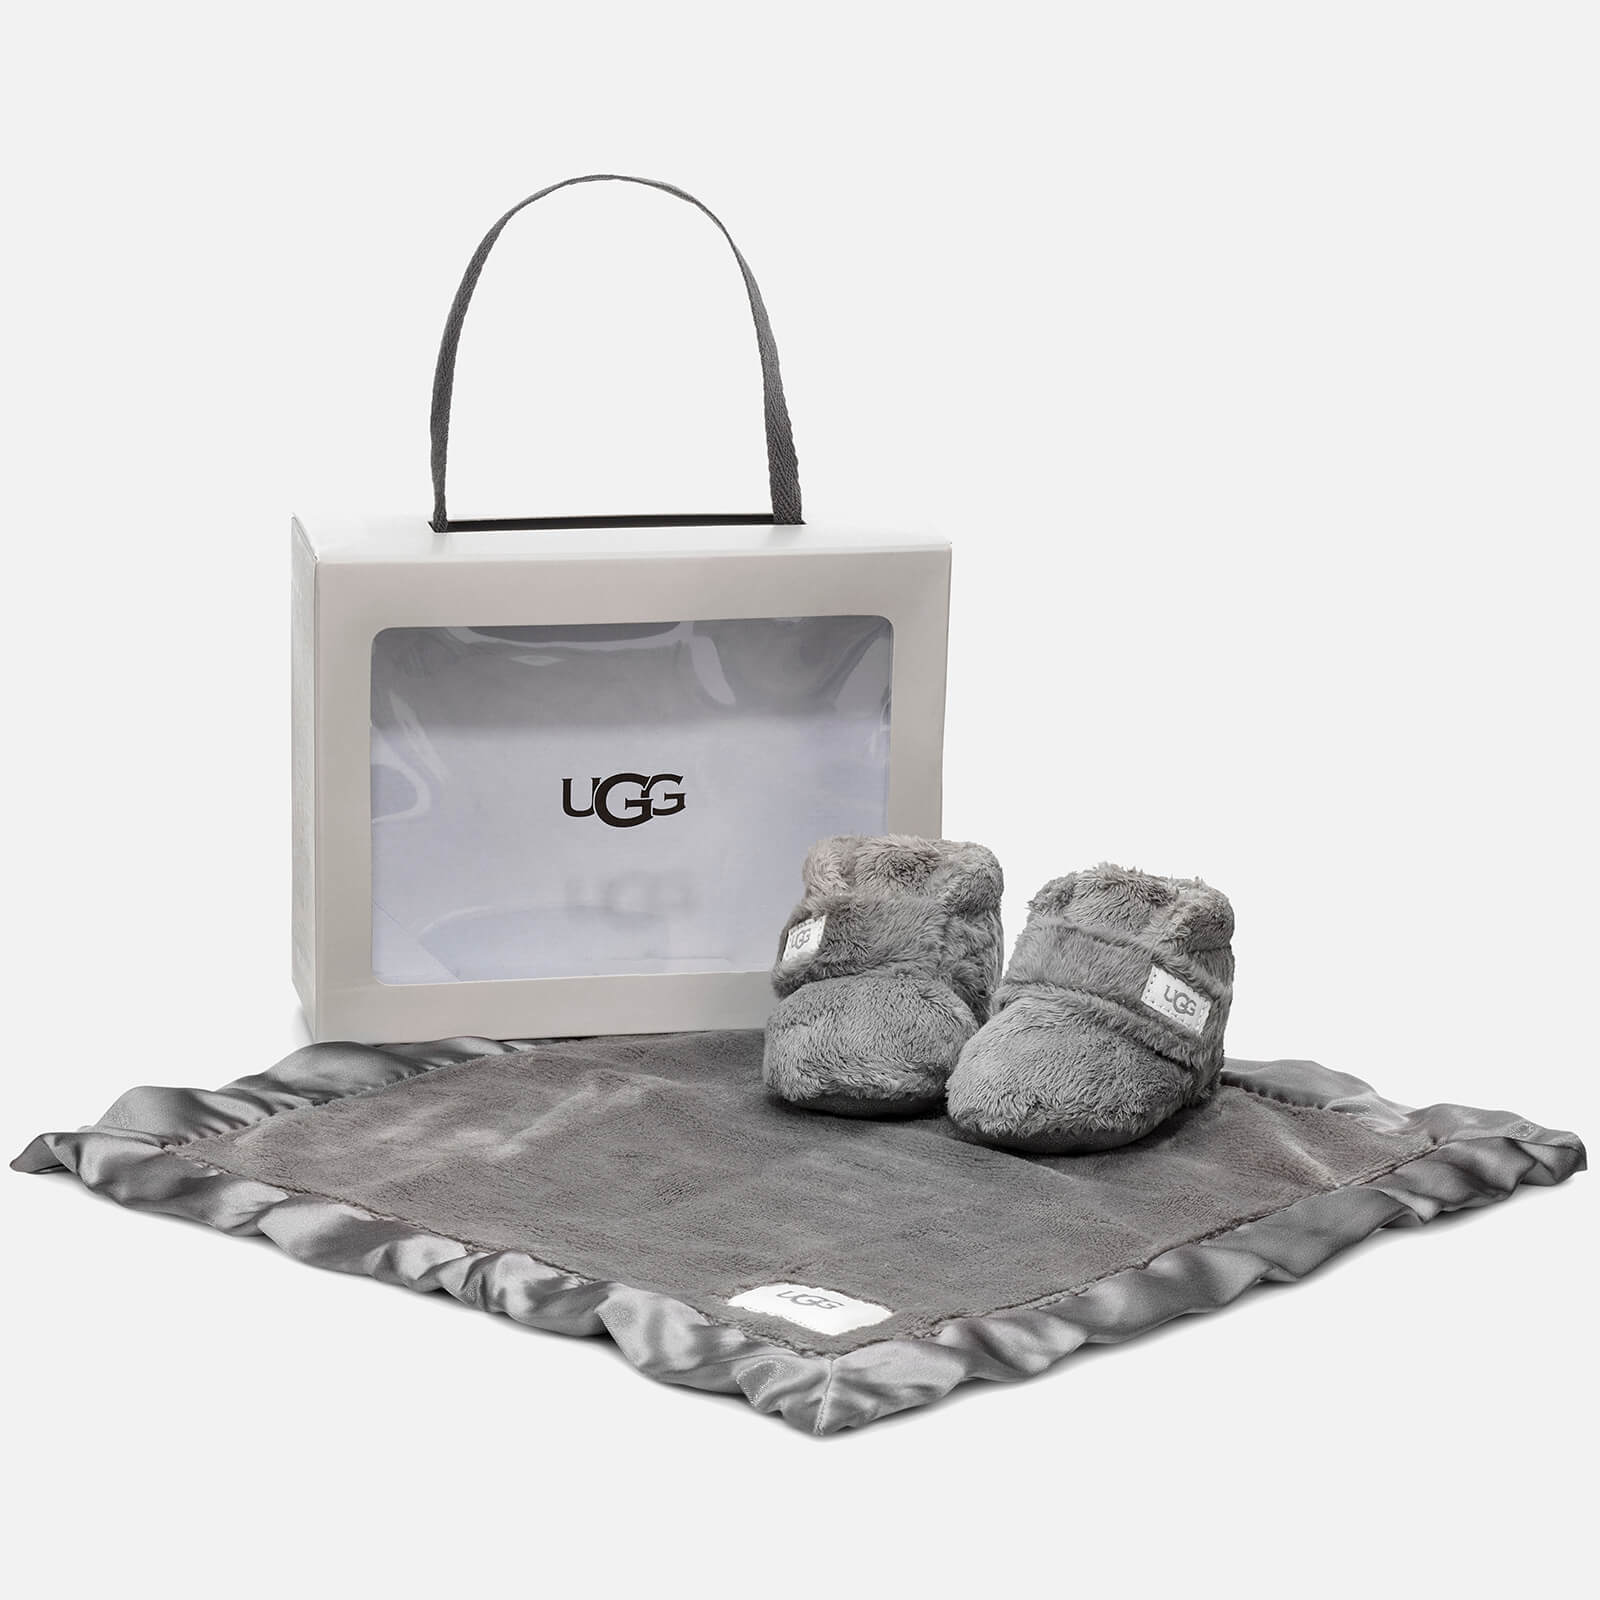 UGG Babie's Bixbee Gift Set - Charcoal - UK 0.5 Baby - Grey